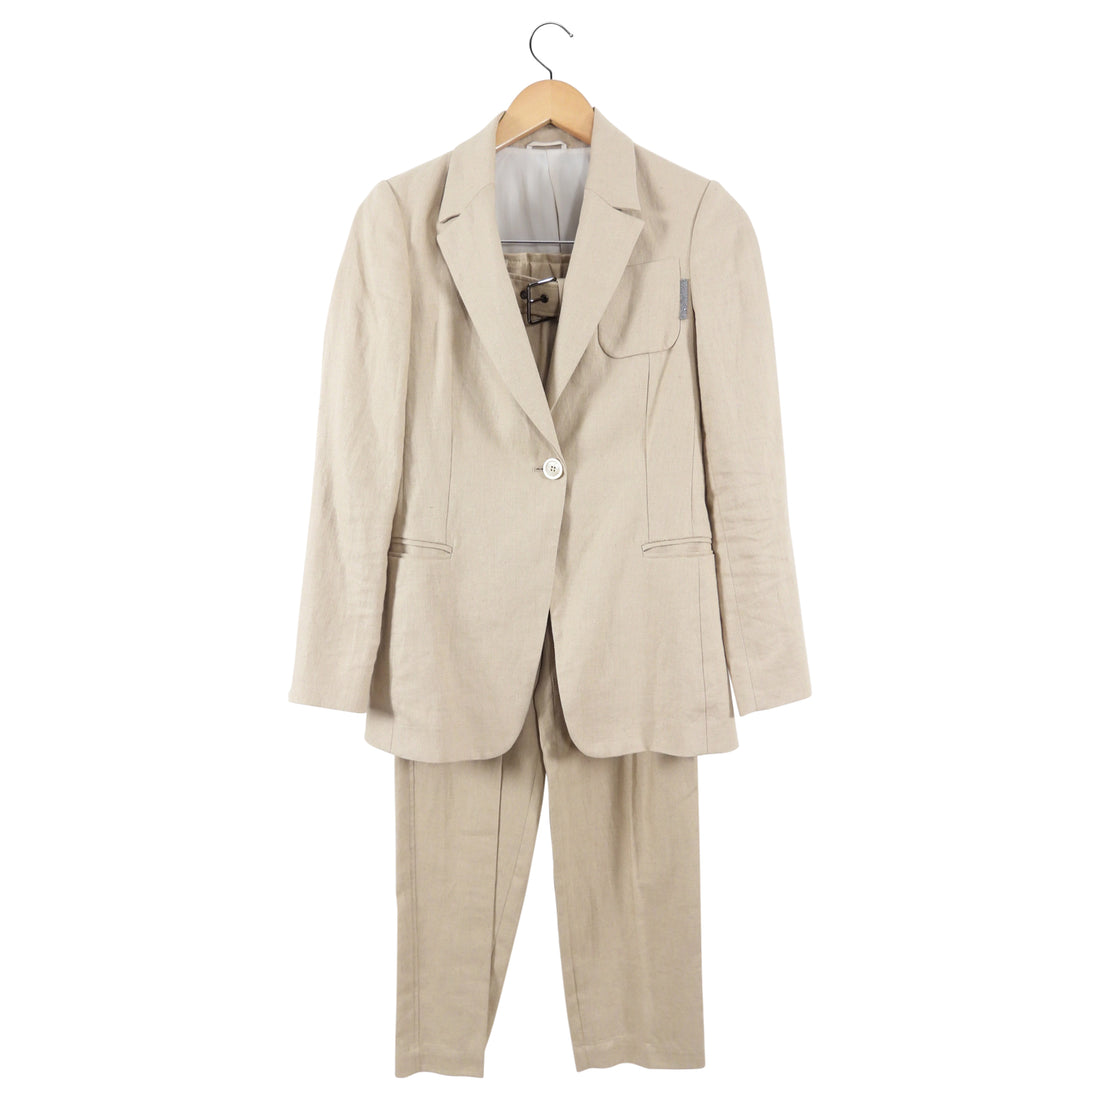 Brunello Cucinelli Natural Beige Linen Pants Suit - XS